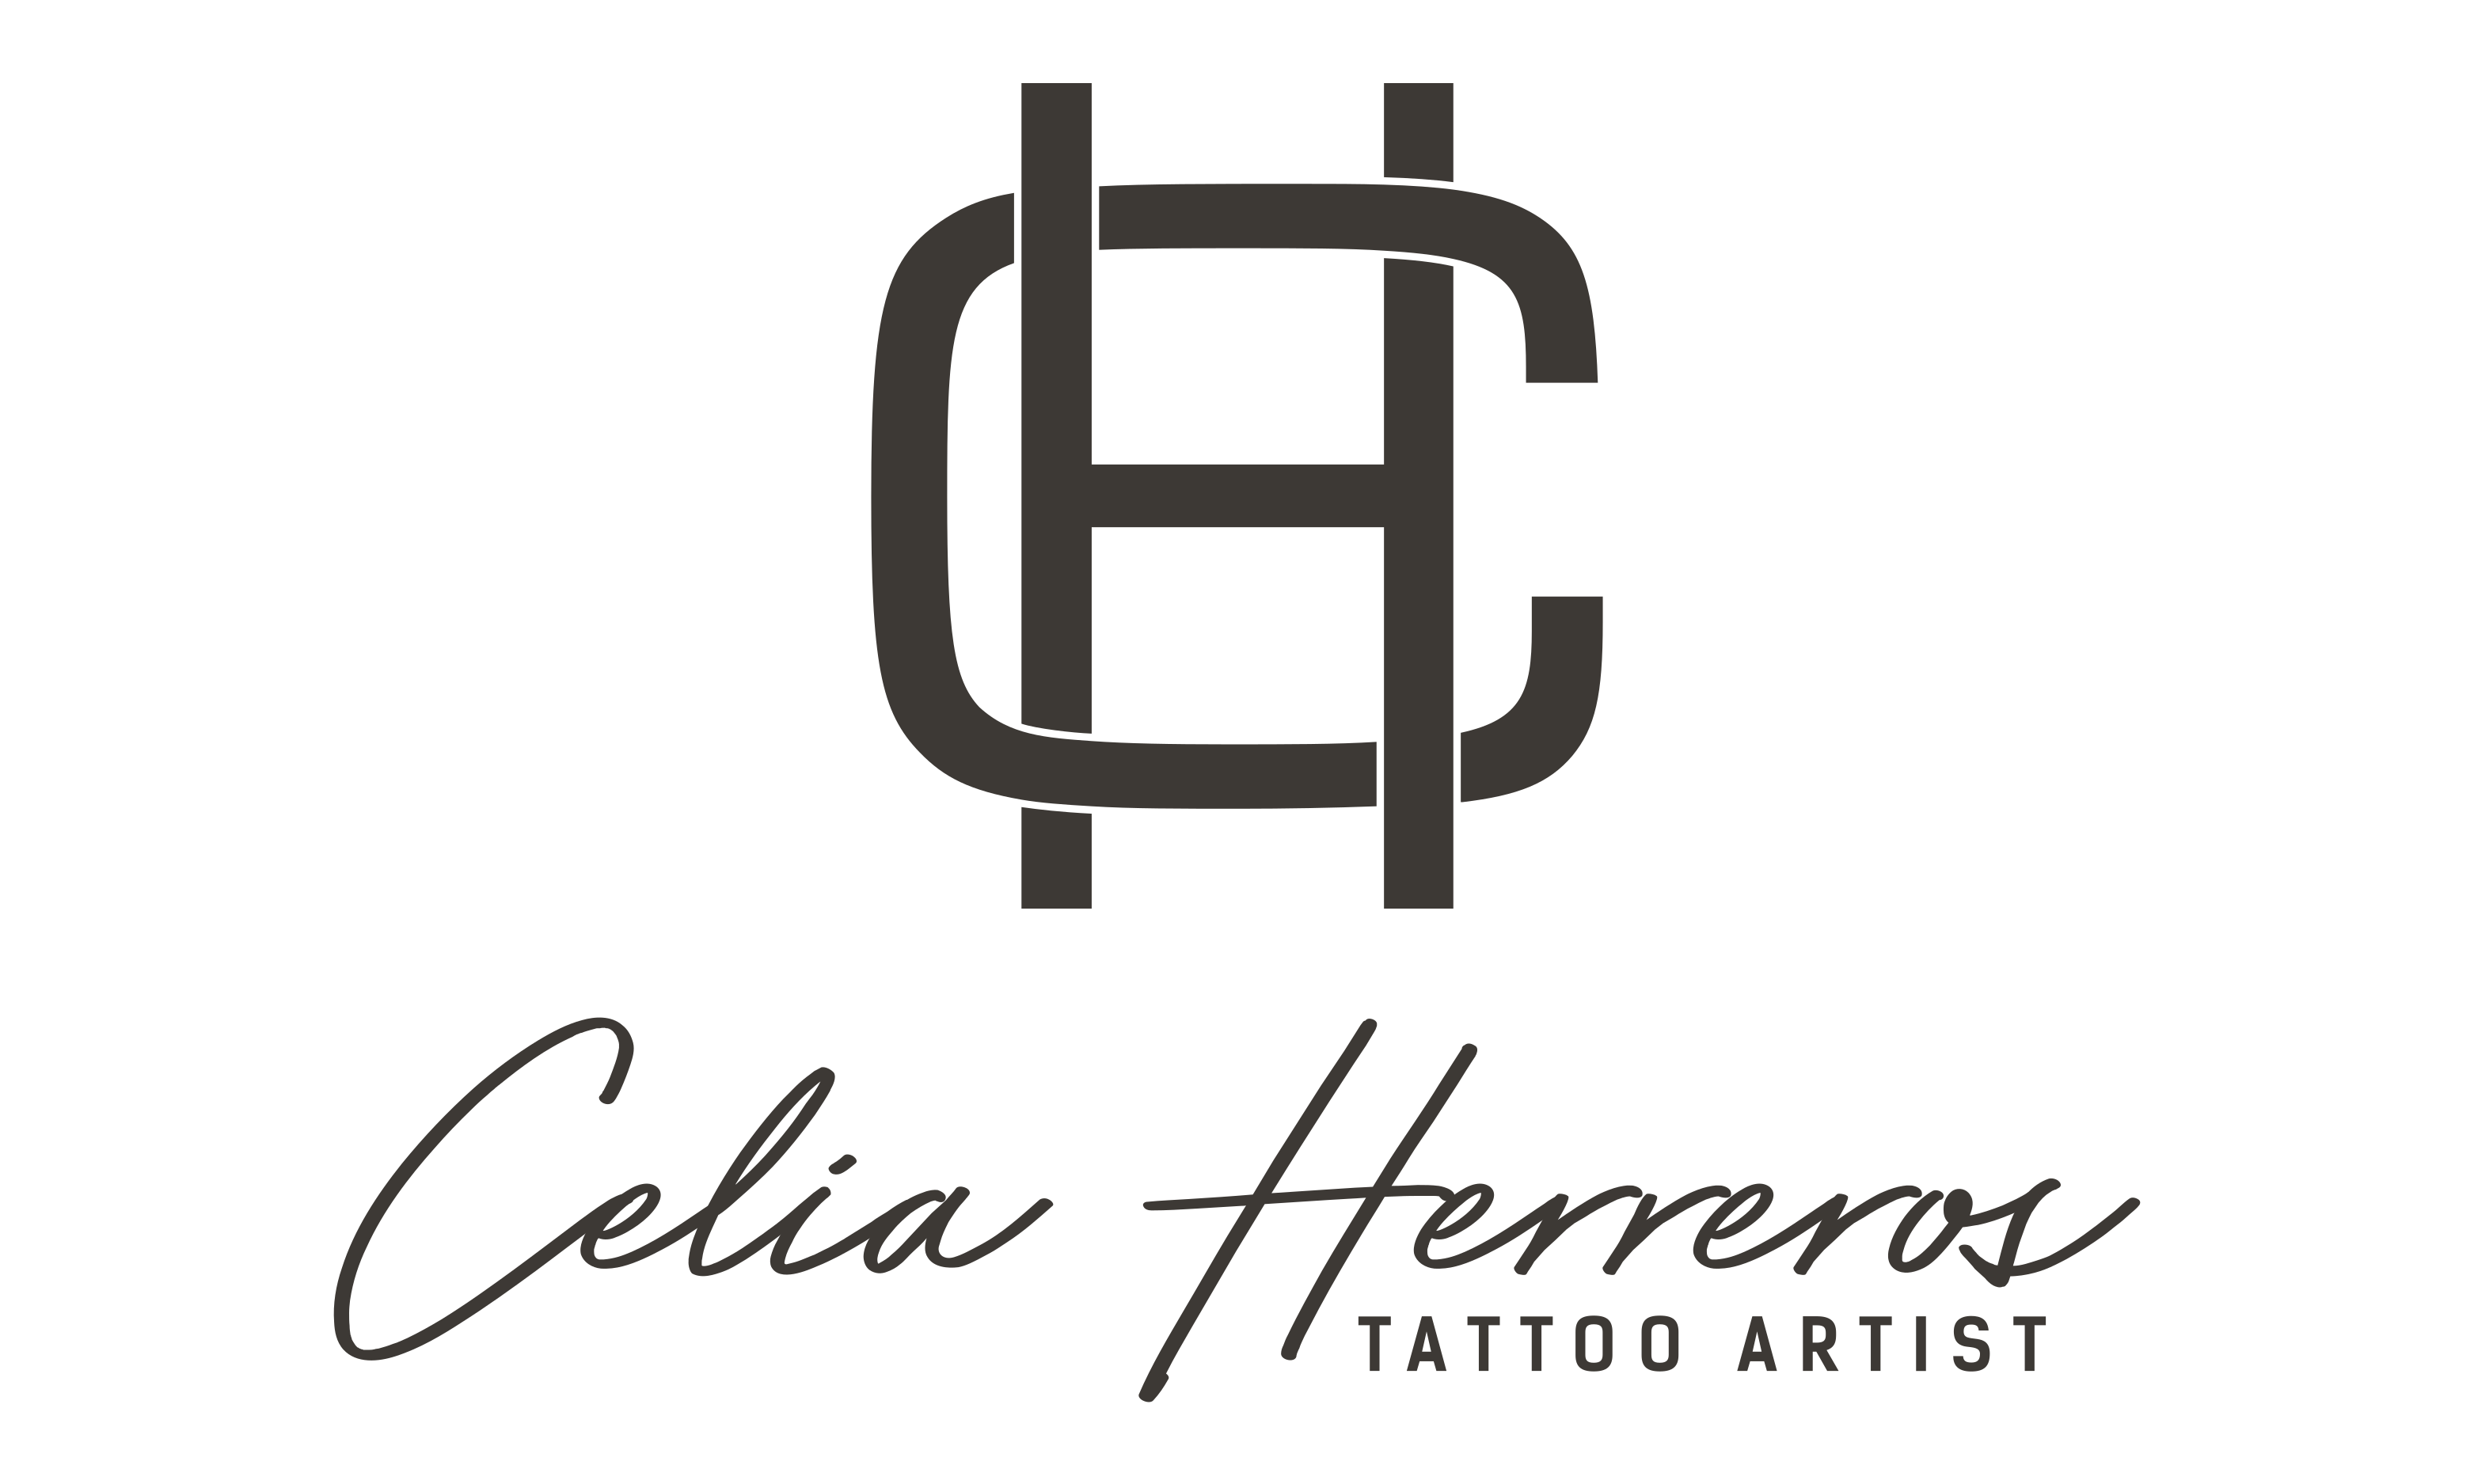 Celia Herreros Tattoo Artist